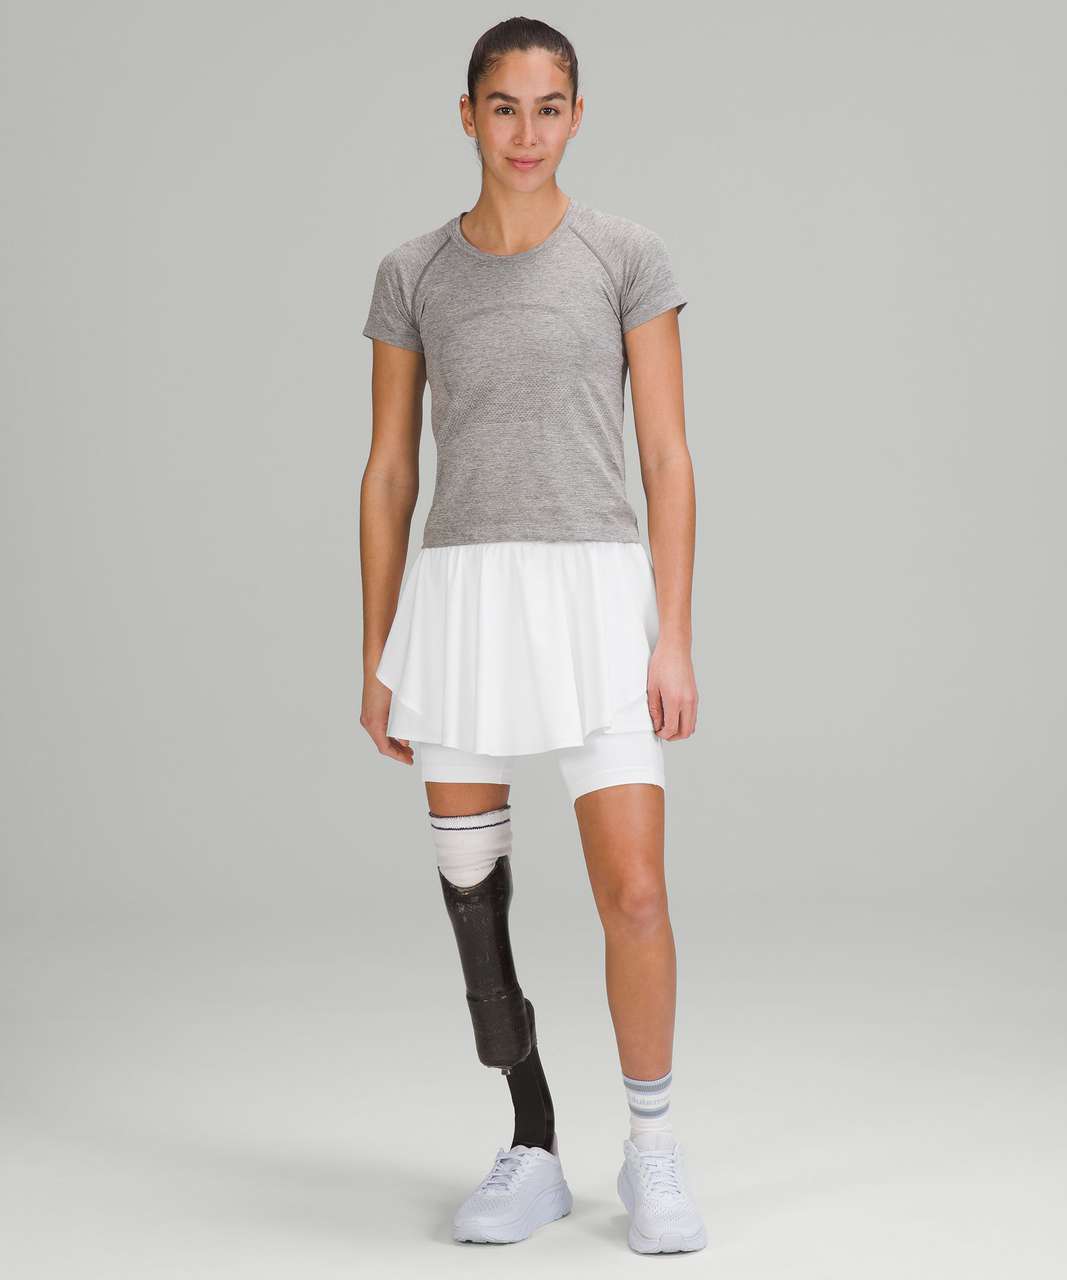 Lululemon Court Rival High-Rise Tennis Skirt - White